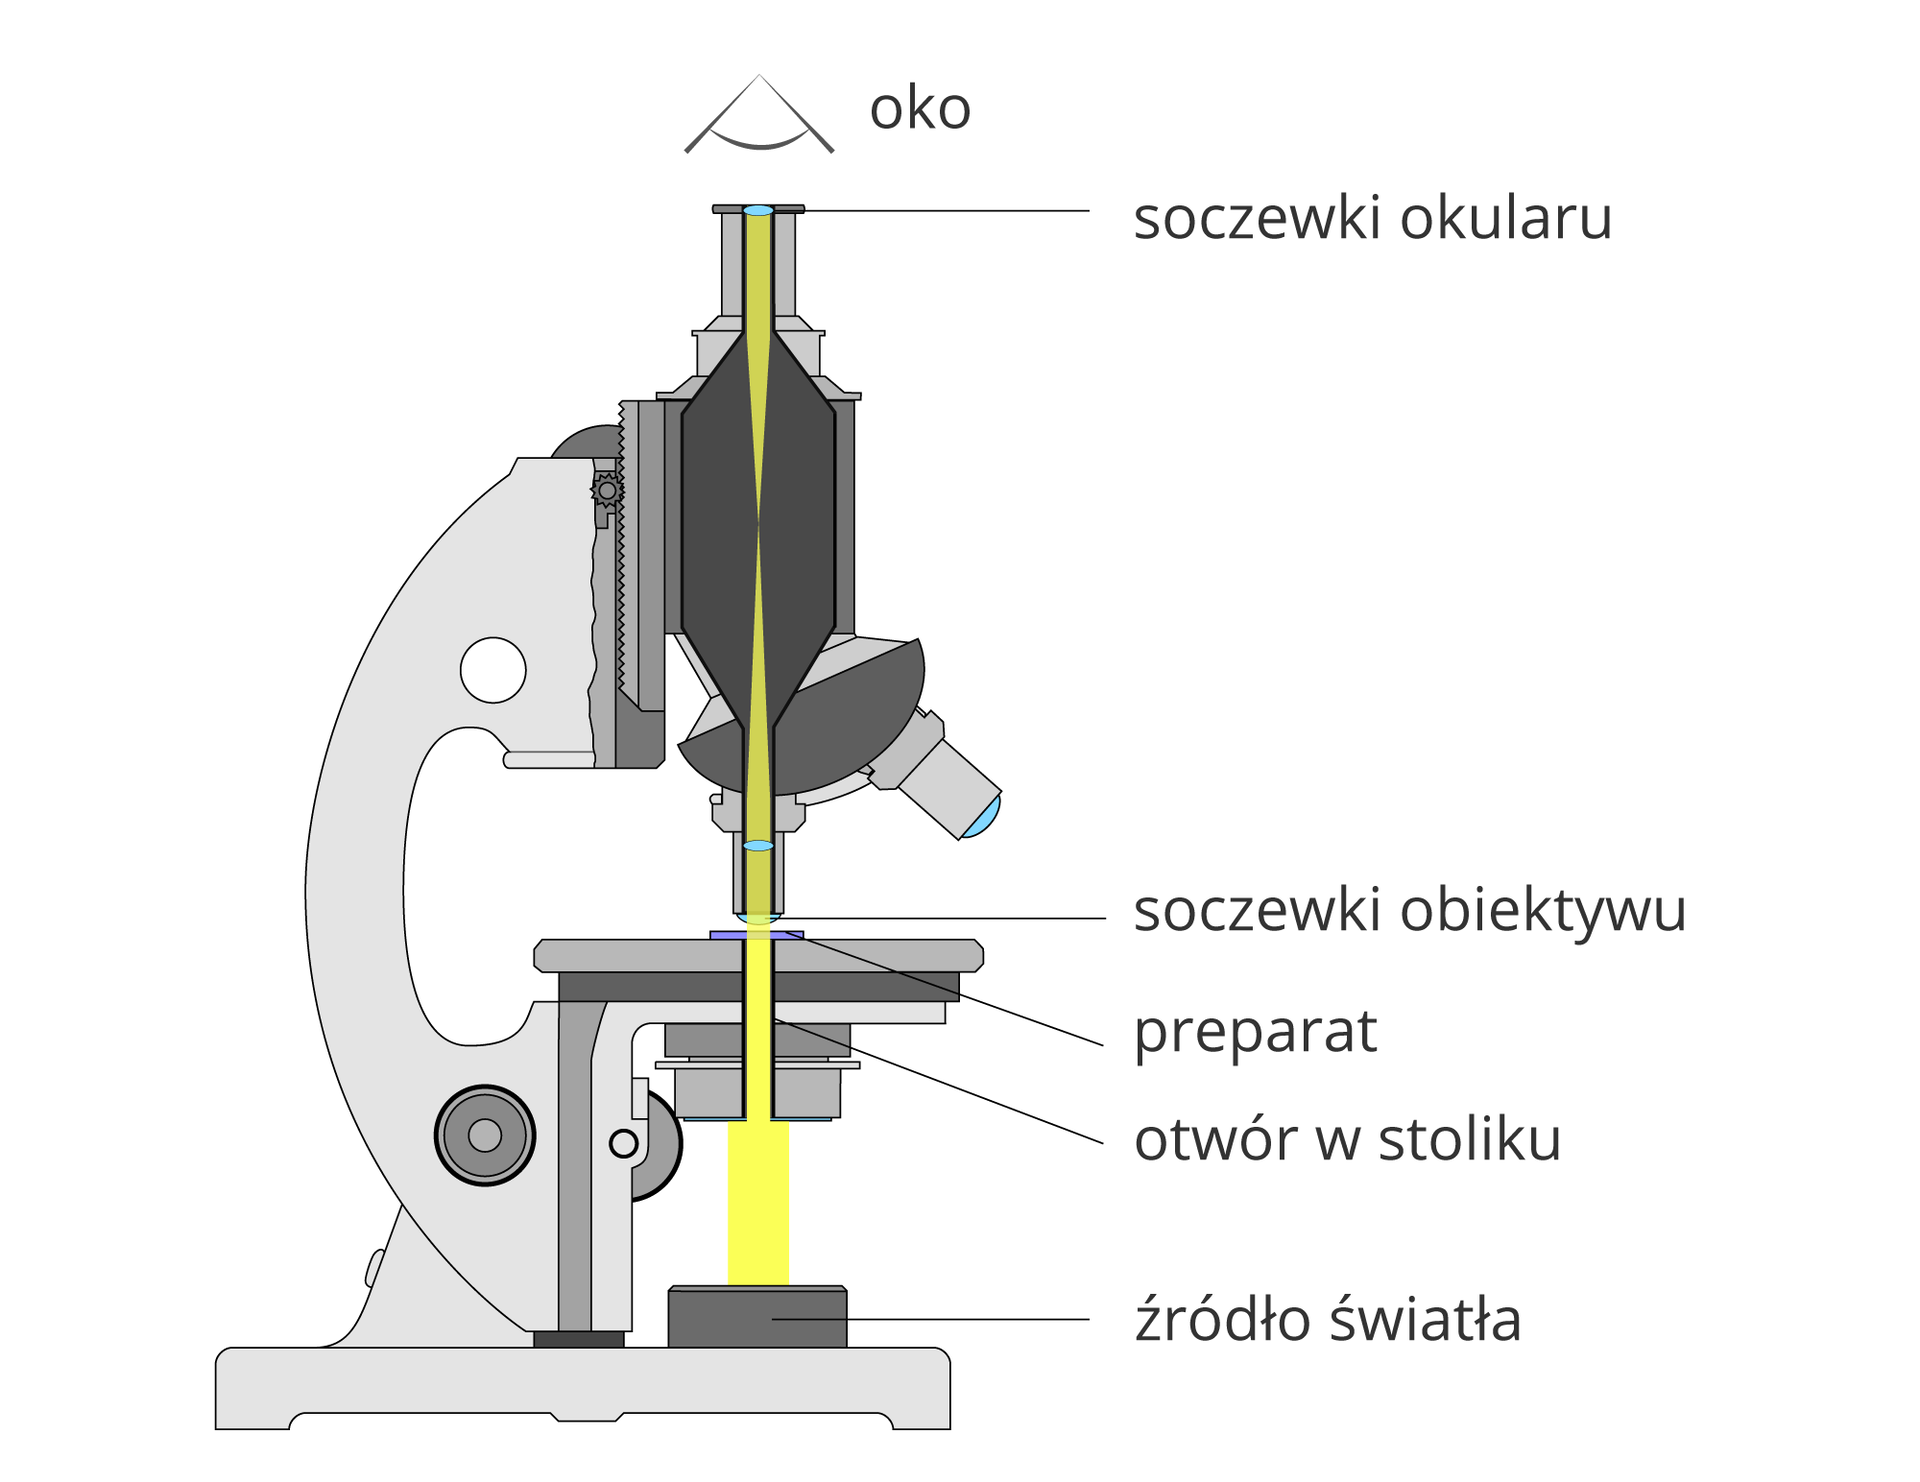 Ilustracja przedstawia przekrój pionowy przez mikroskop. Przez części optyczne w kolorze szarym biegnie żółty pasek, pokazujący drogę światła do ludzkiego oka, znajdującego się nad mikroskopem.